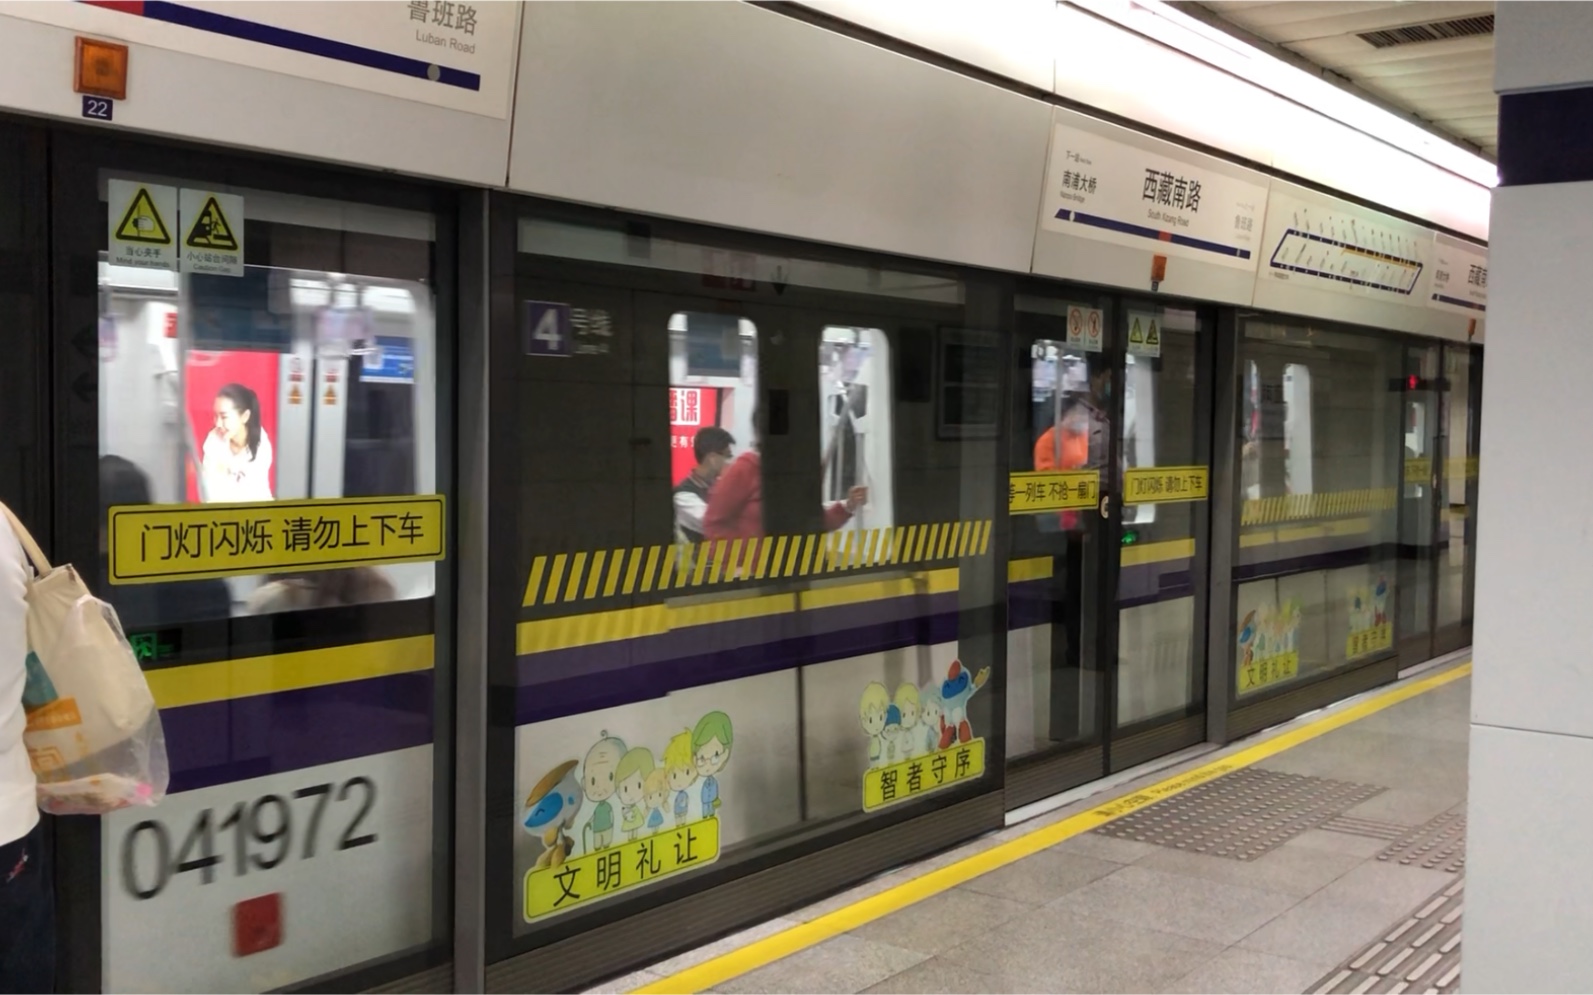 上海地铁4号线包公433进西藏南路站